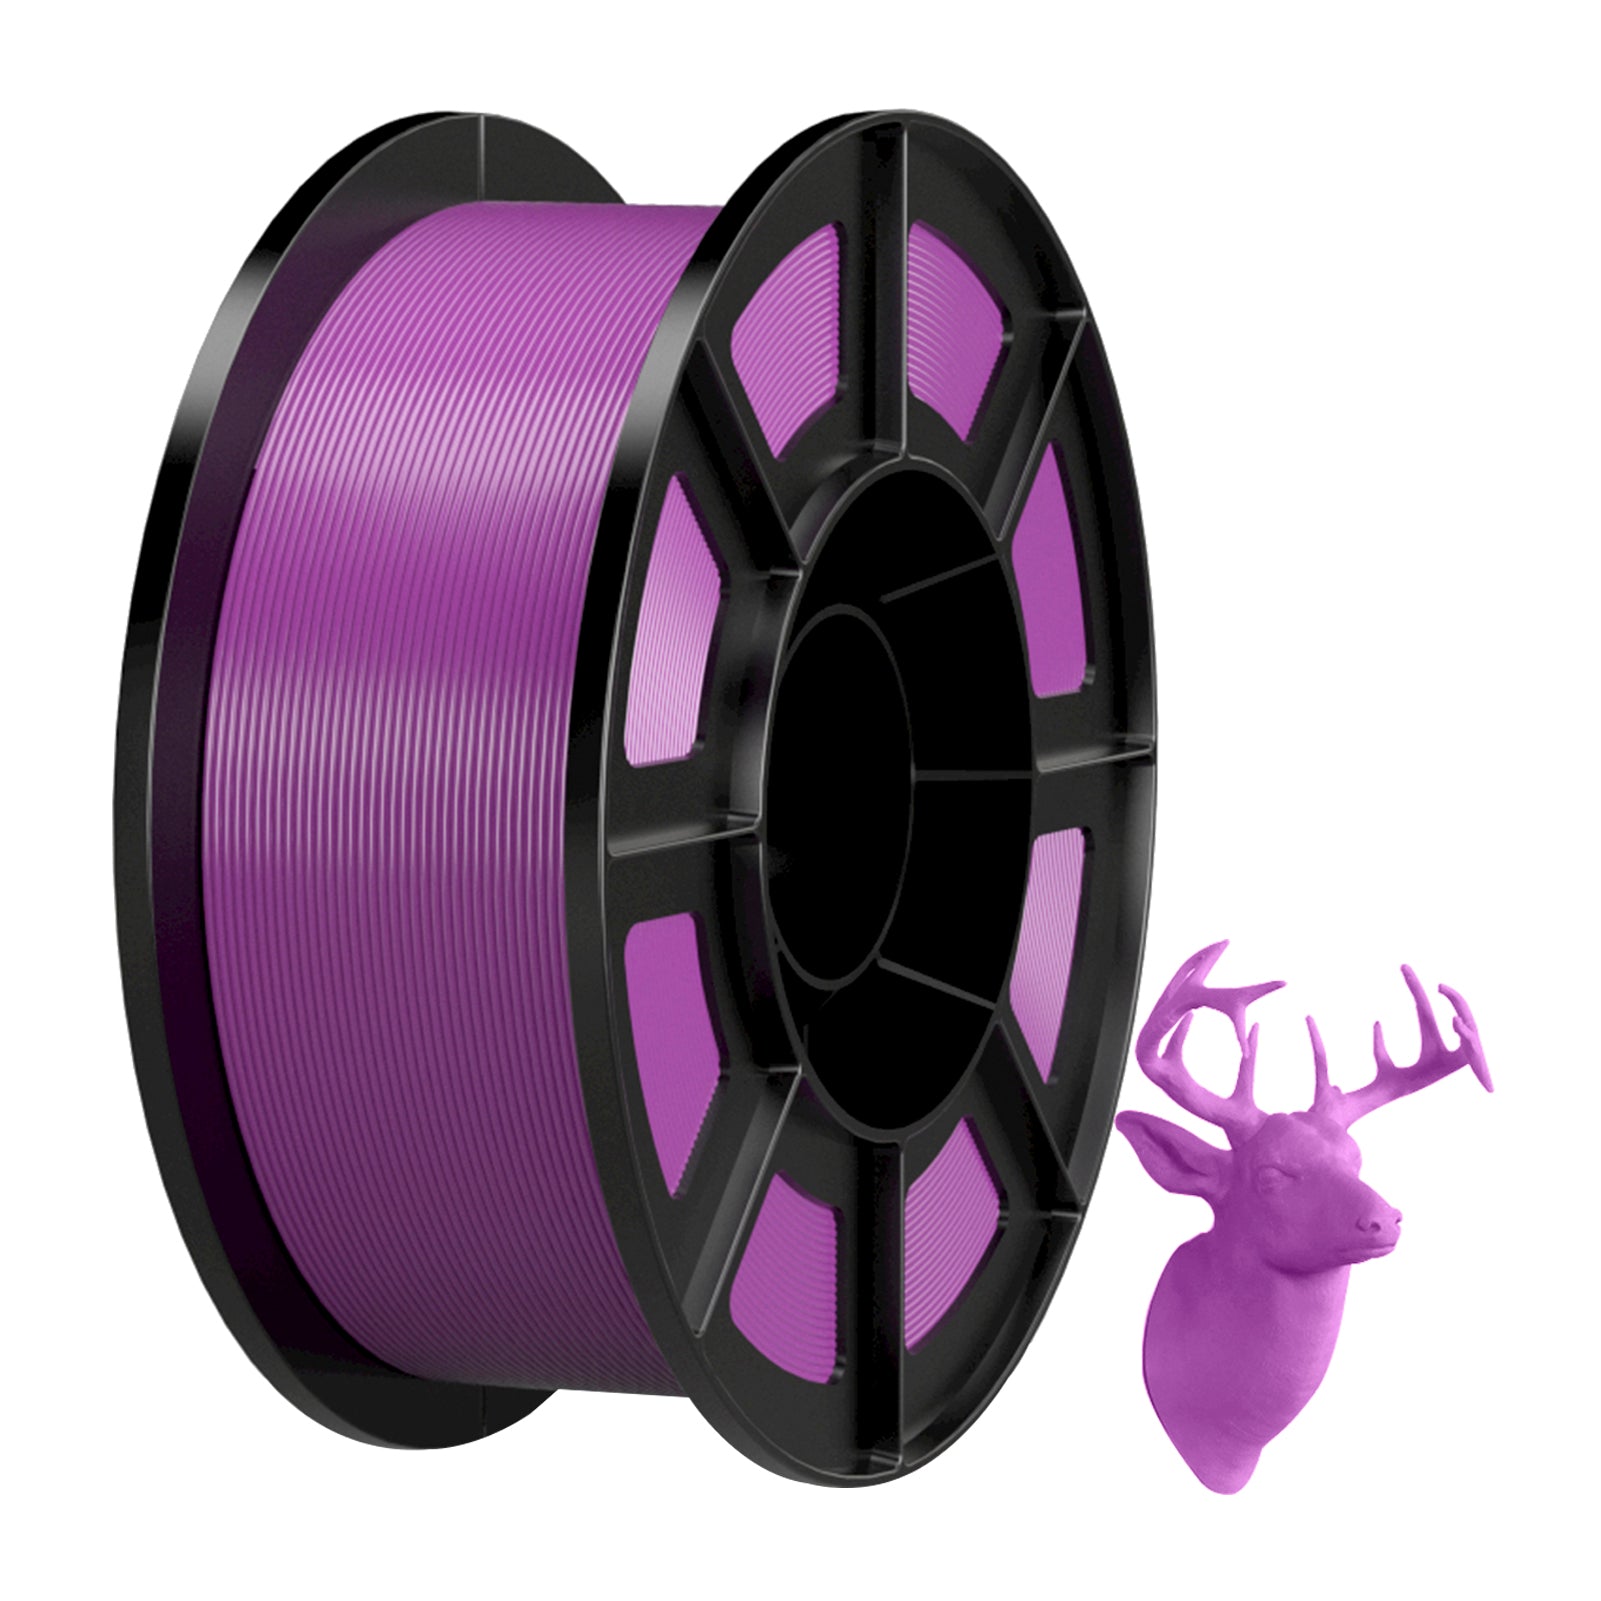 1 kg Spool PLA Filament 3D Printer Filament 1.75mm diameter PLA 3D Printing Material Consumables for Most FDM 3D Printer, Purple